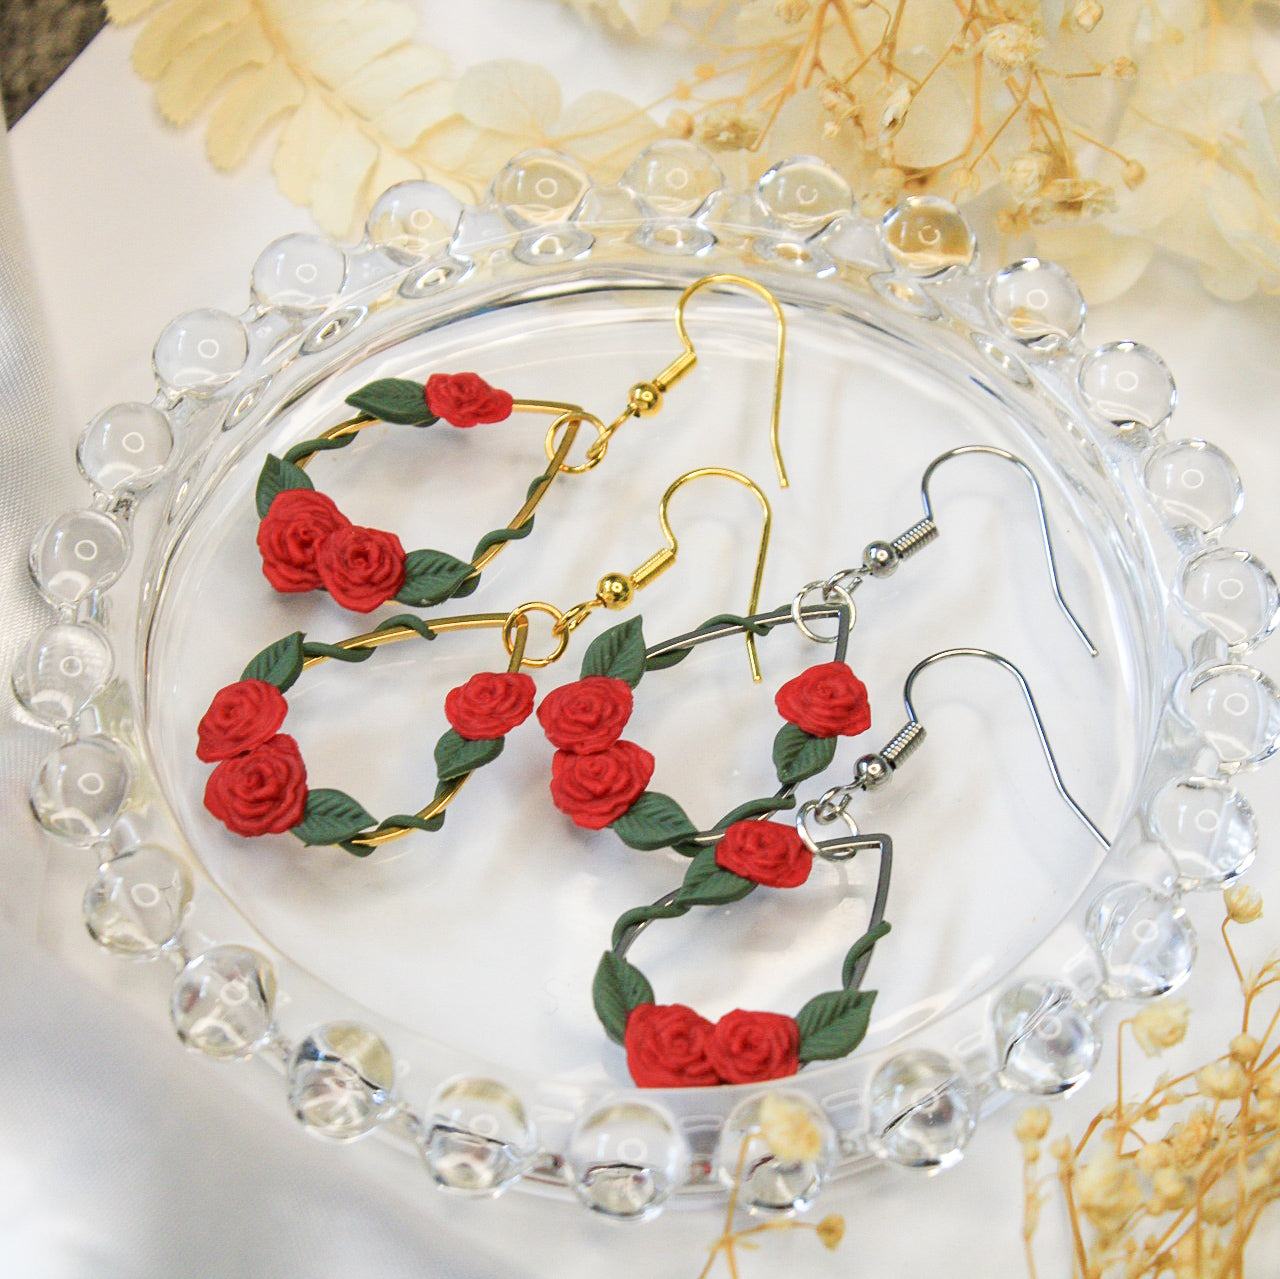 Rose Earrings NZ | Handmade flower earrings for sensitive ears